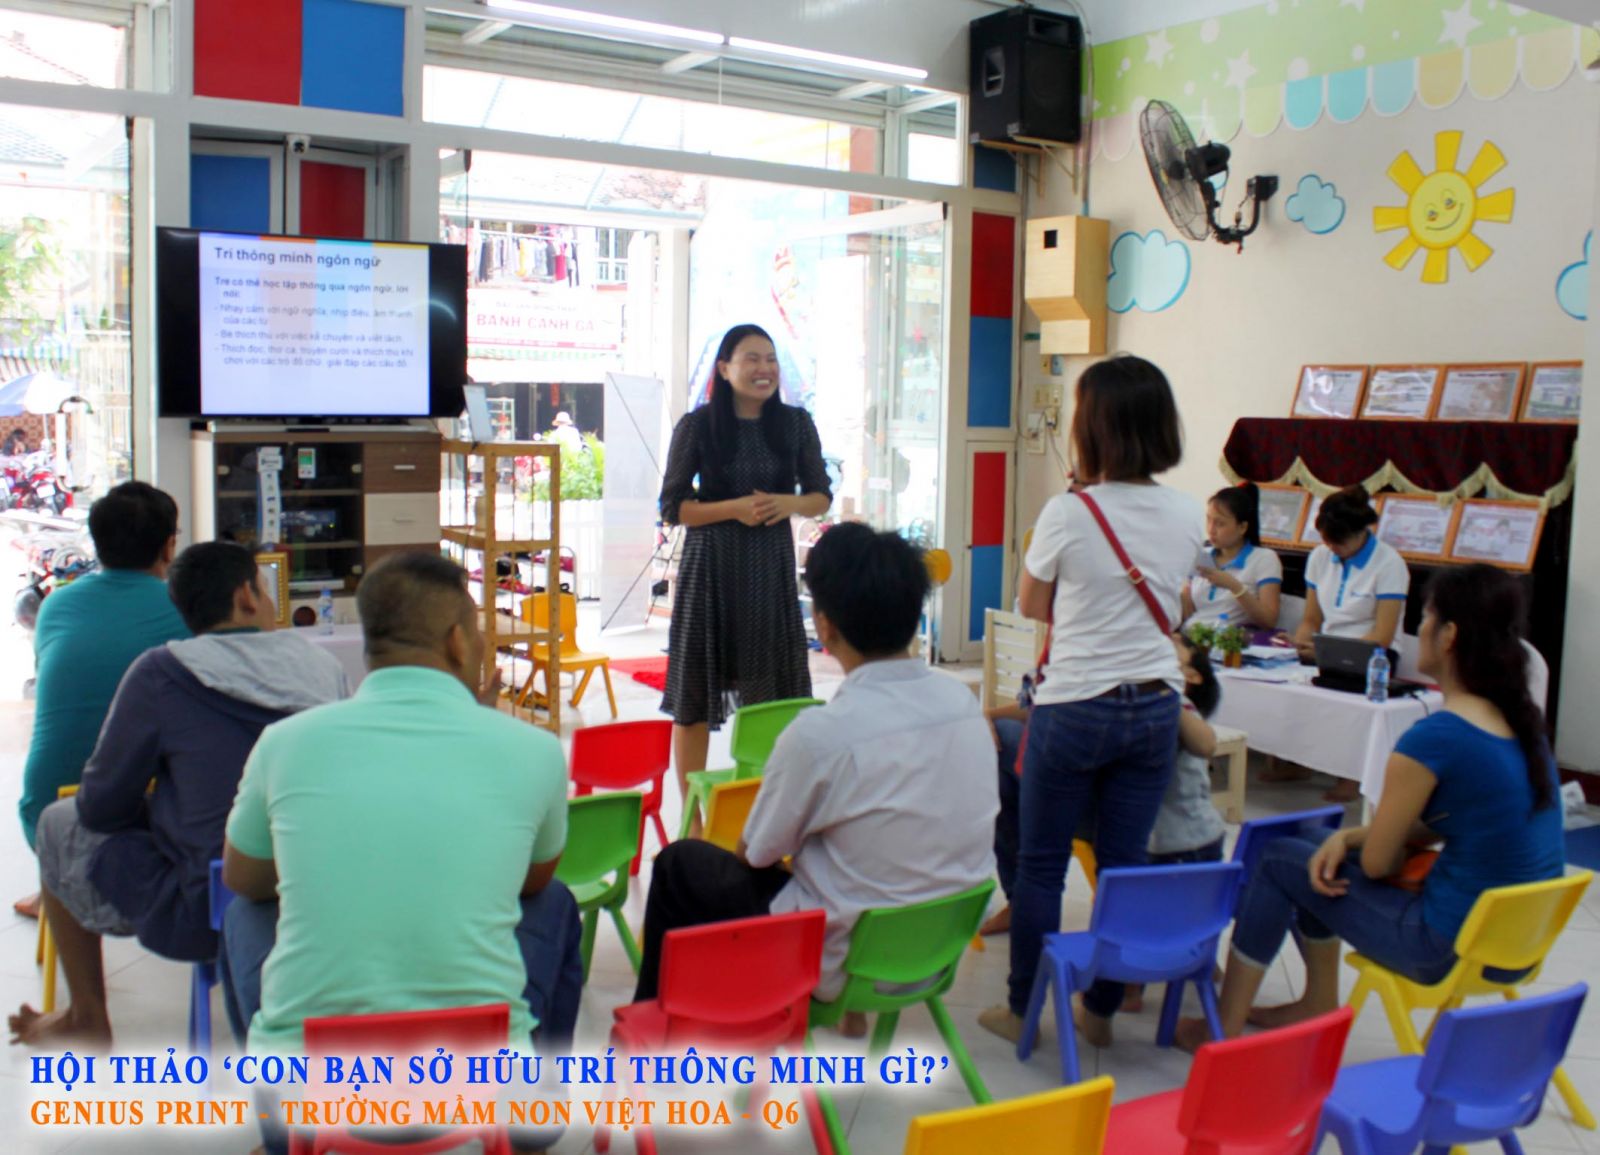 Buổi hội thảo có sự tham gia của chị Nguyễn Thị Thu Hằng - Chuyên gia có nhiều kinh nghiệm trong lĩnh vực giáo dục sớm đến từ Genius Print